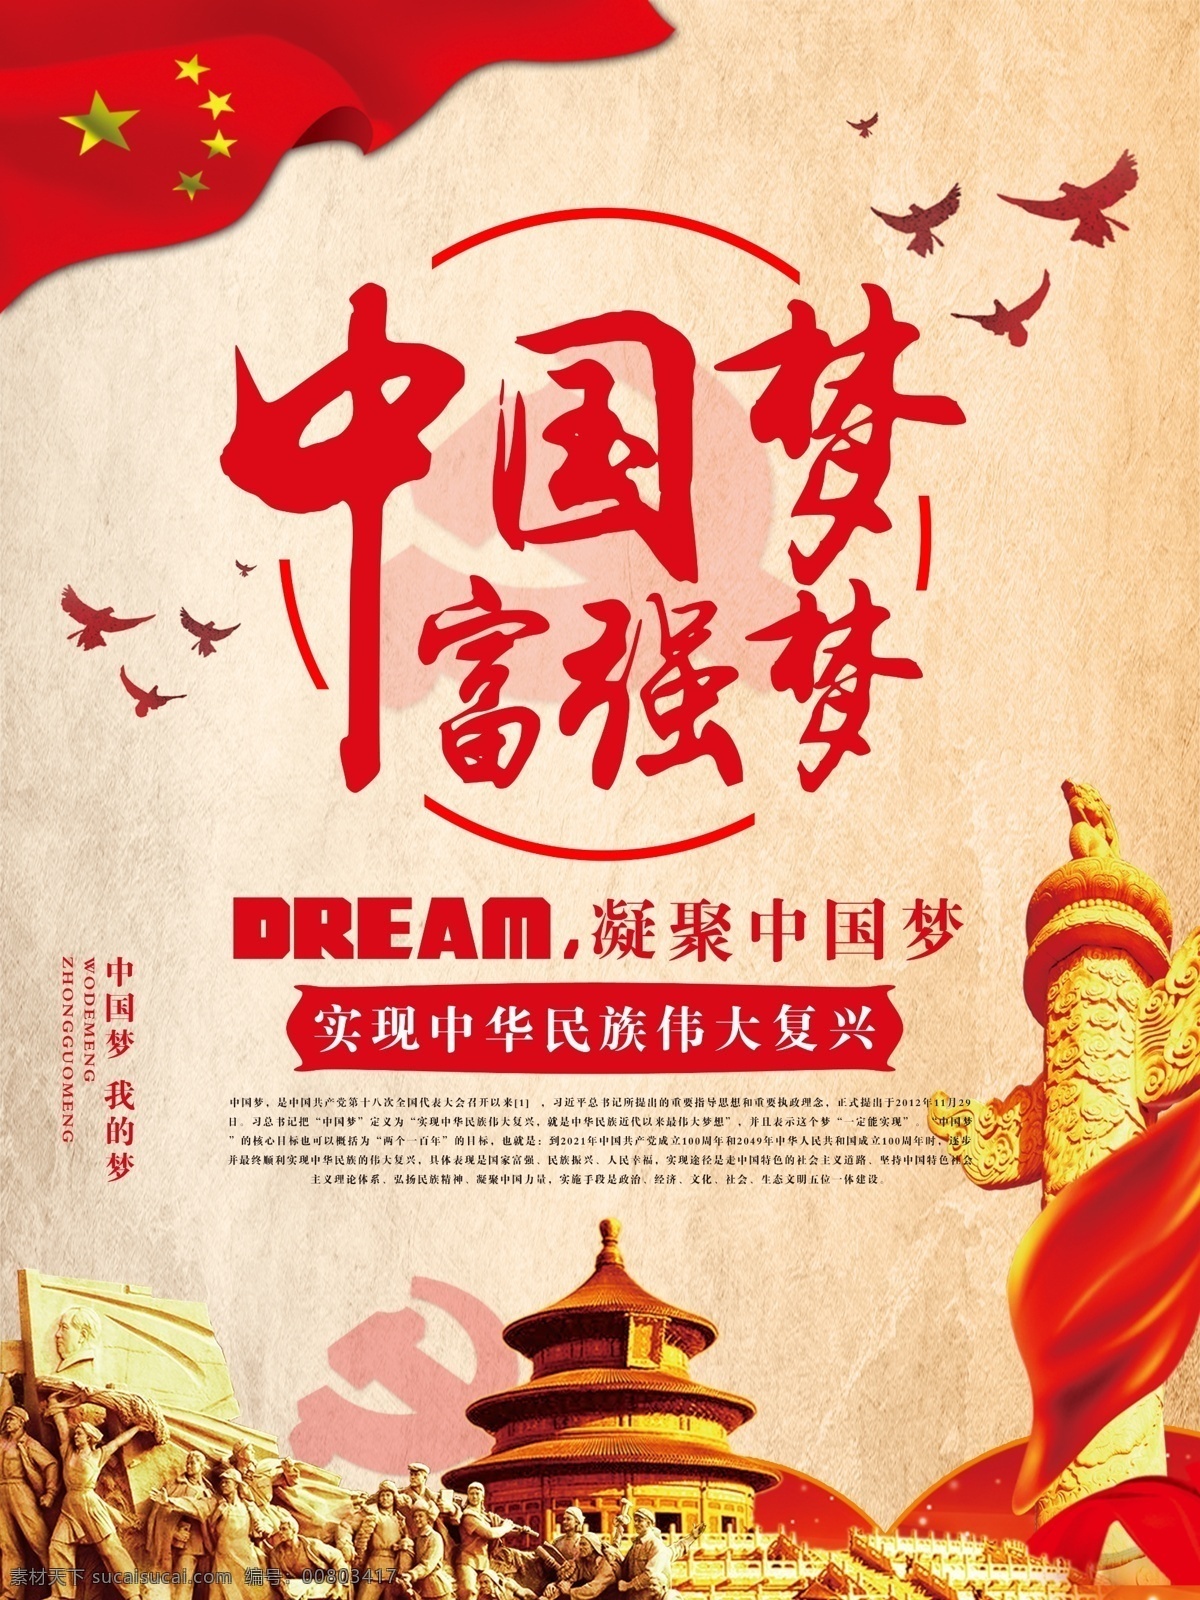 中国梦海报 中国梦 中国梦展板 党建 共筑中国梦 中国梦富强梦